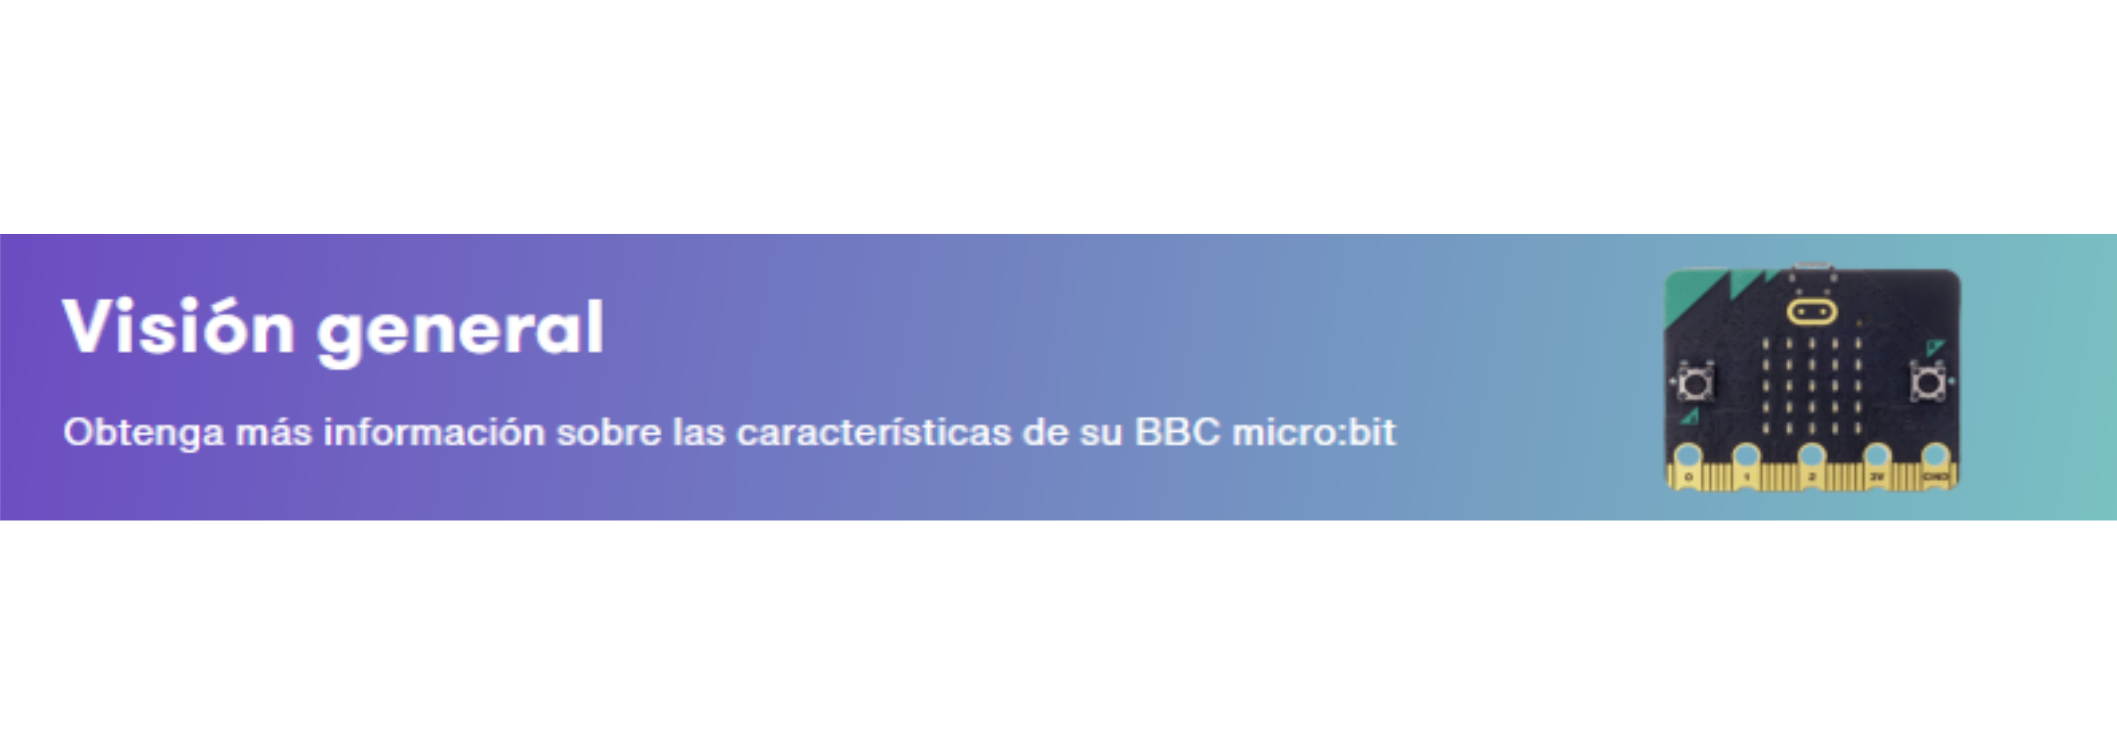 Imagen de un cartel que pone: Visión general. Obtenga más información sobre las características de su BBC micro:bit. También, se ve una imagen de la placa.